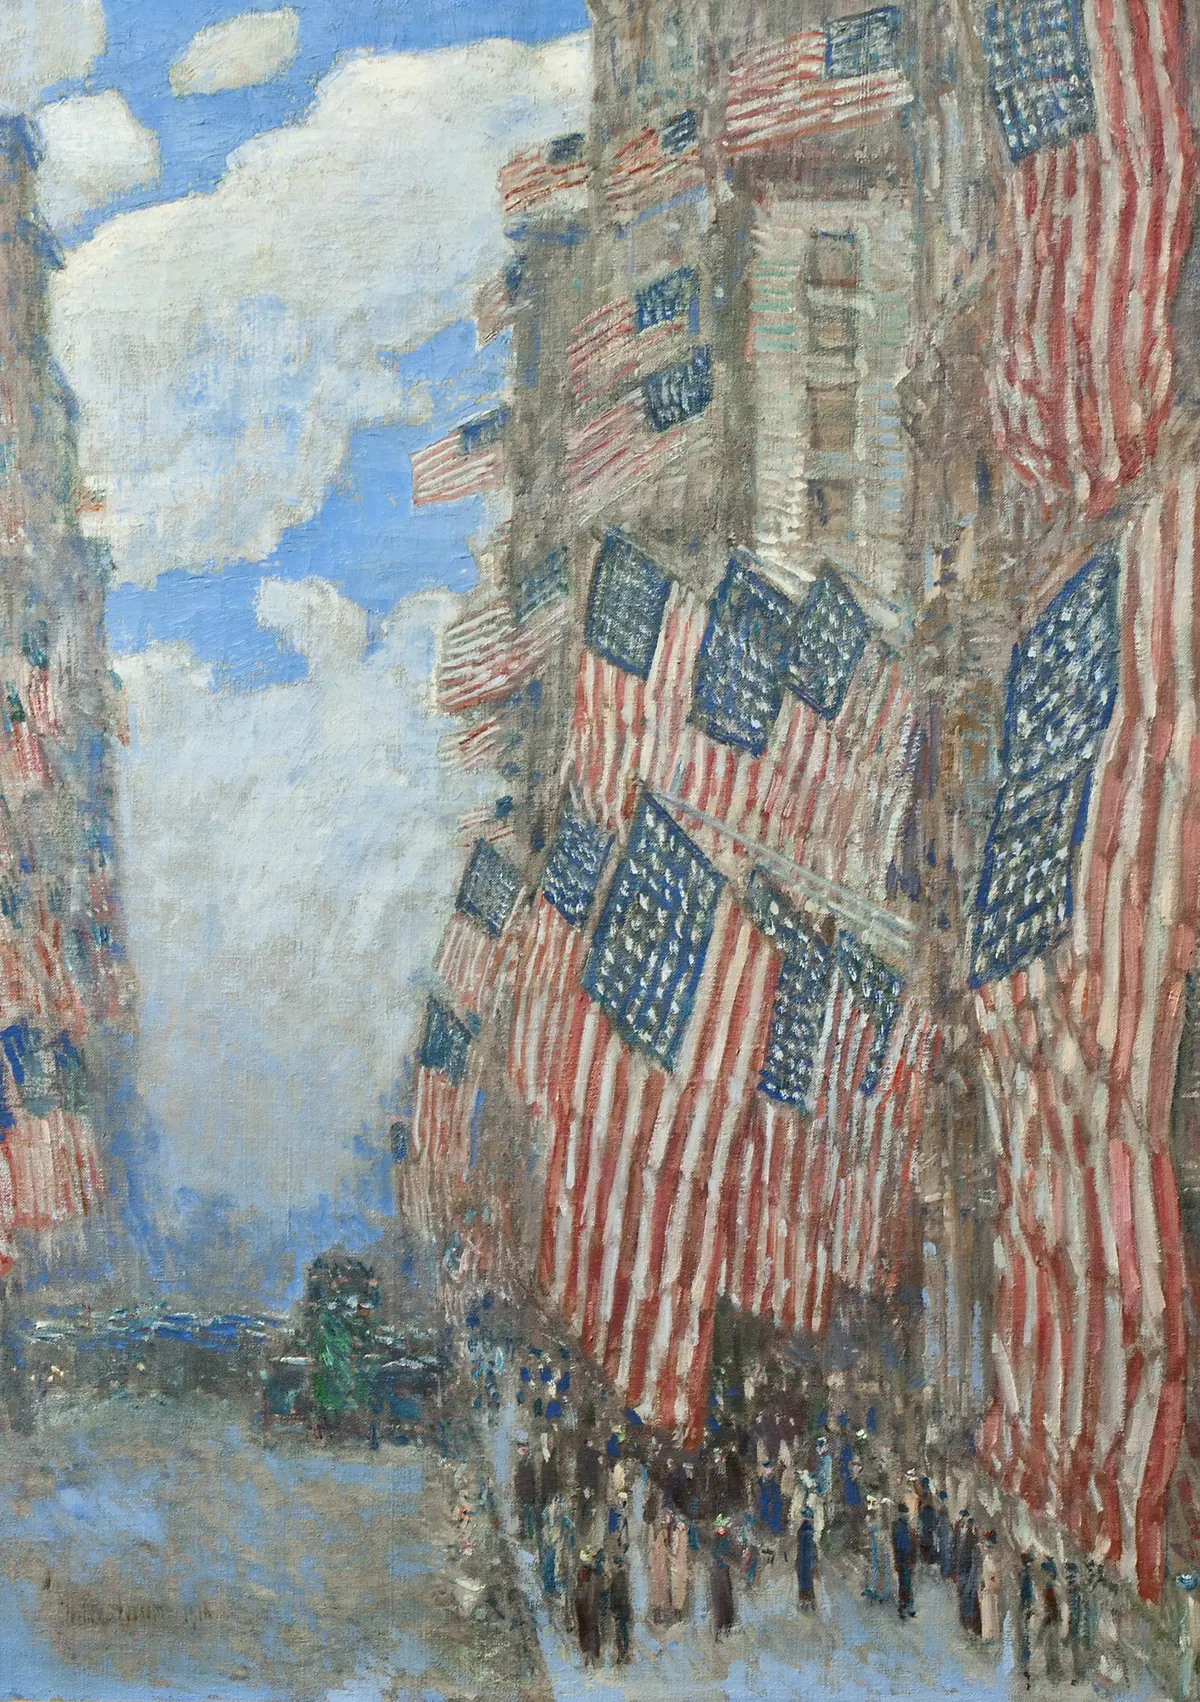 1916، الرابع من يوليو/تموز by Frederick Childe Hassam - 1916 - الأبعاد: 91.4 × 66.7  سم 